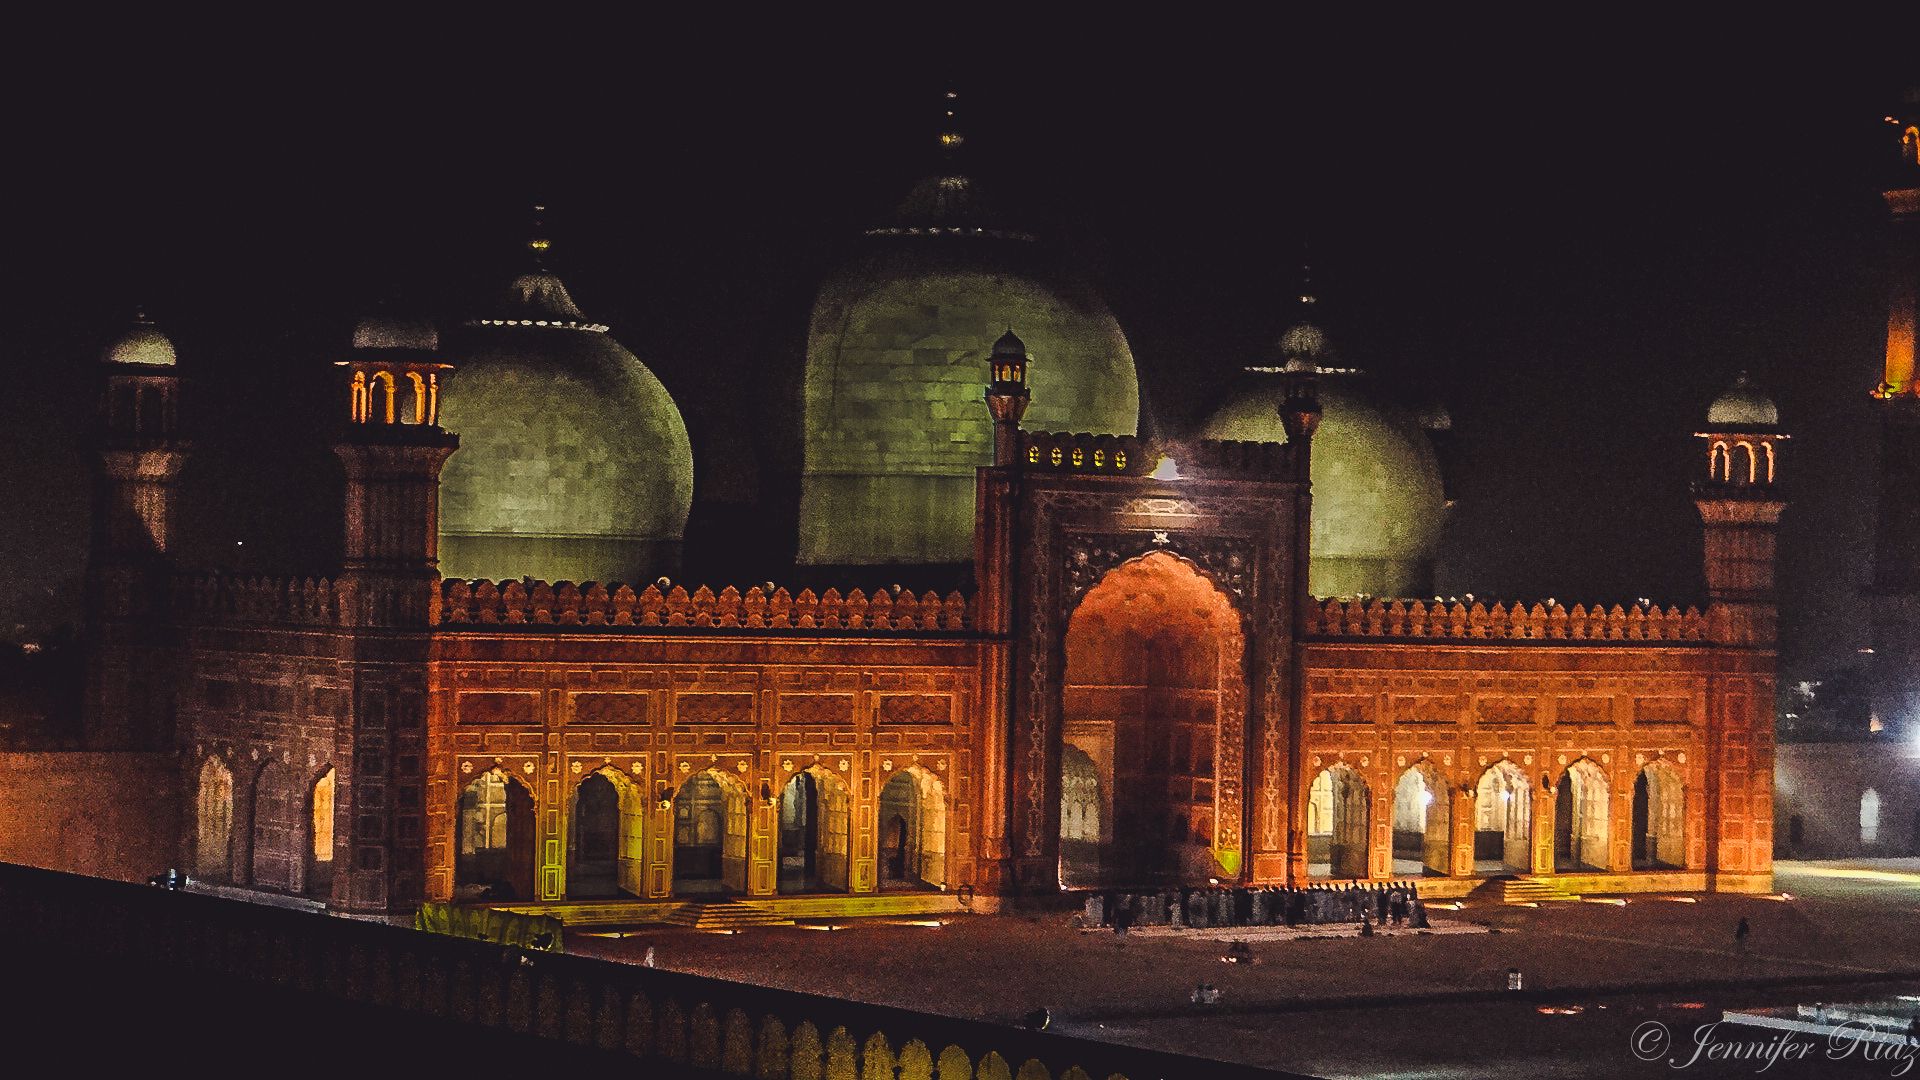 Jennifer Riaz Image of Badshahi Mosque, Lahore Pakistan